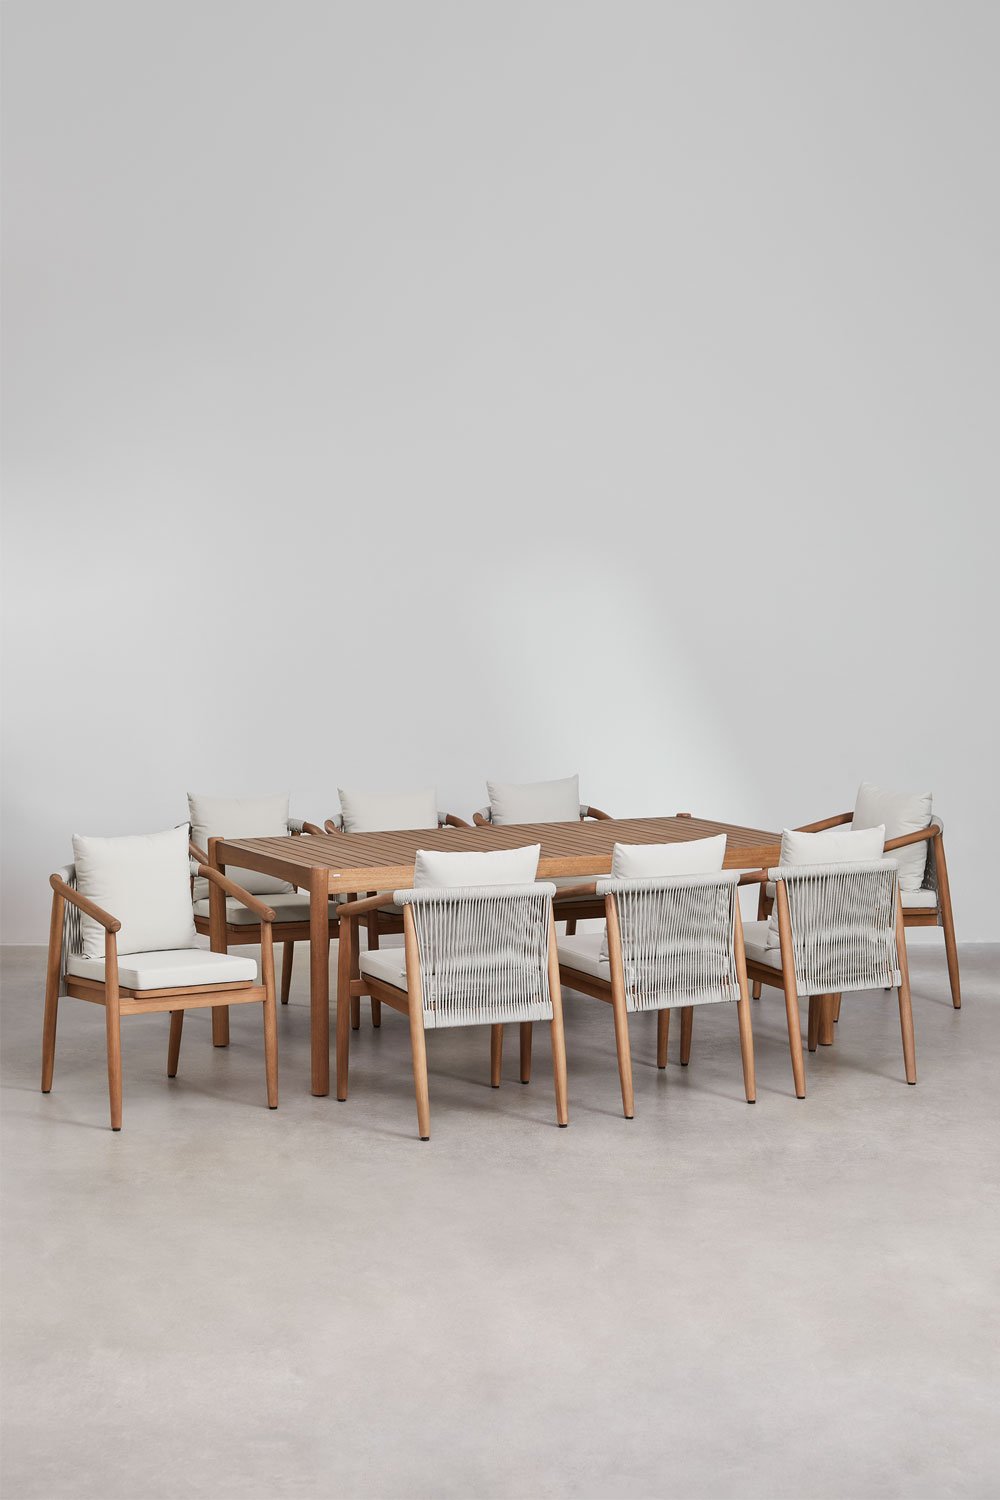 Rechthoekige tafelset (200x100 cm) en 8 tuinstoelen met armleuningen in eucalyptushout Aderyn, galerij beeld 1